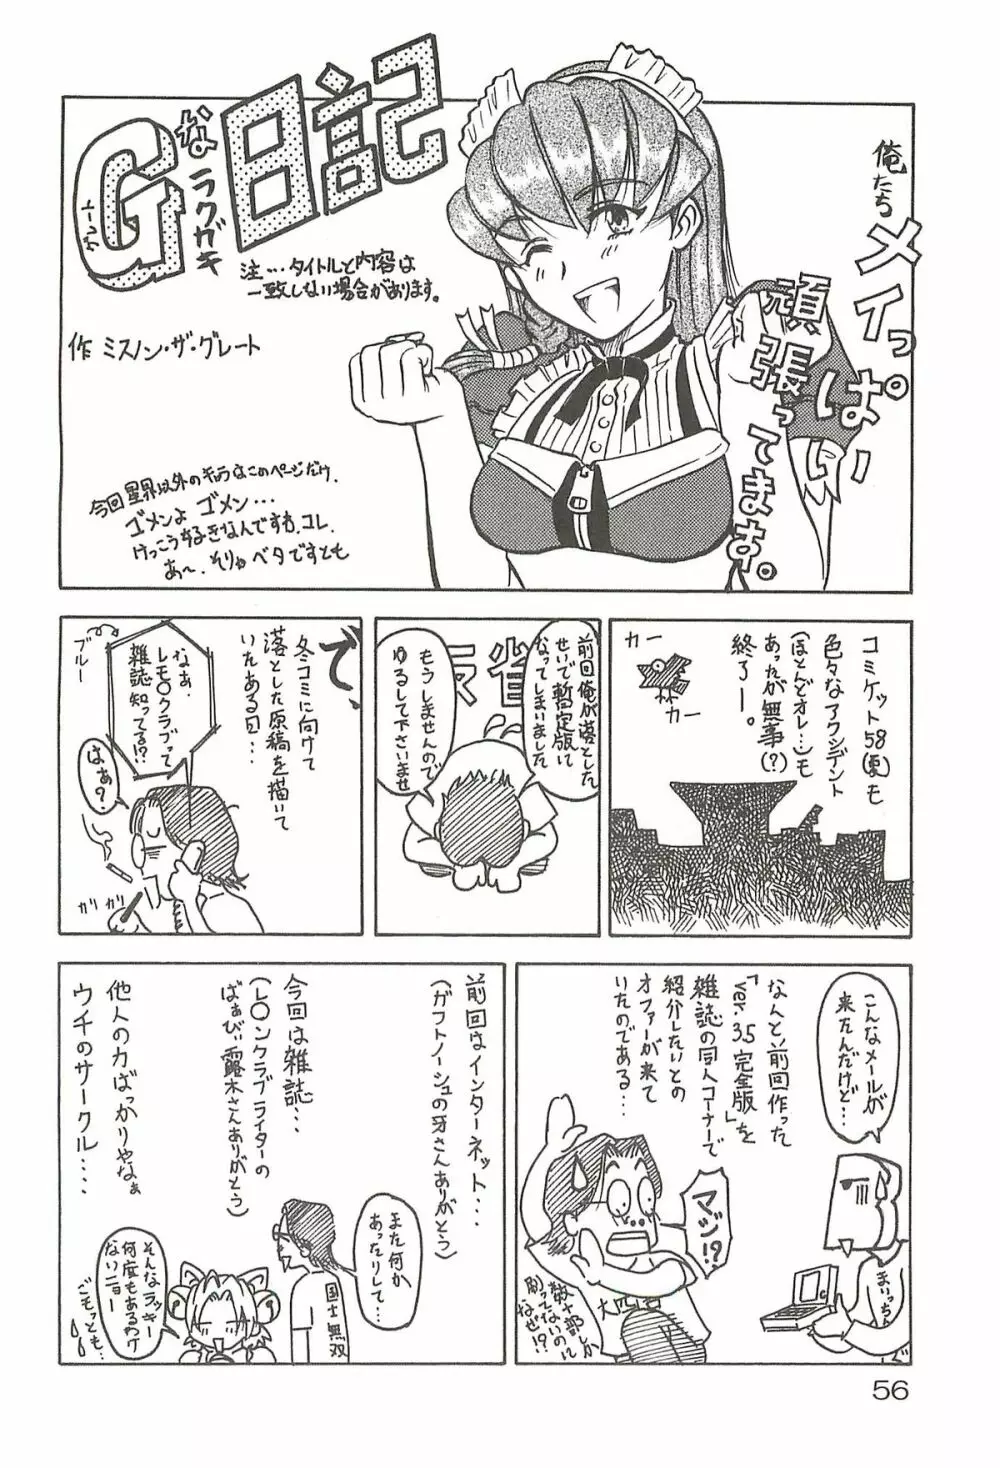 追放覚悟 Special edition Phase1 - page55